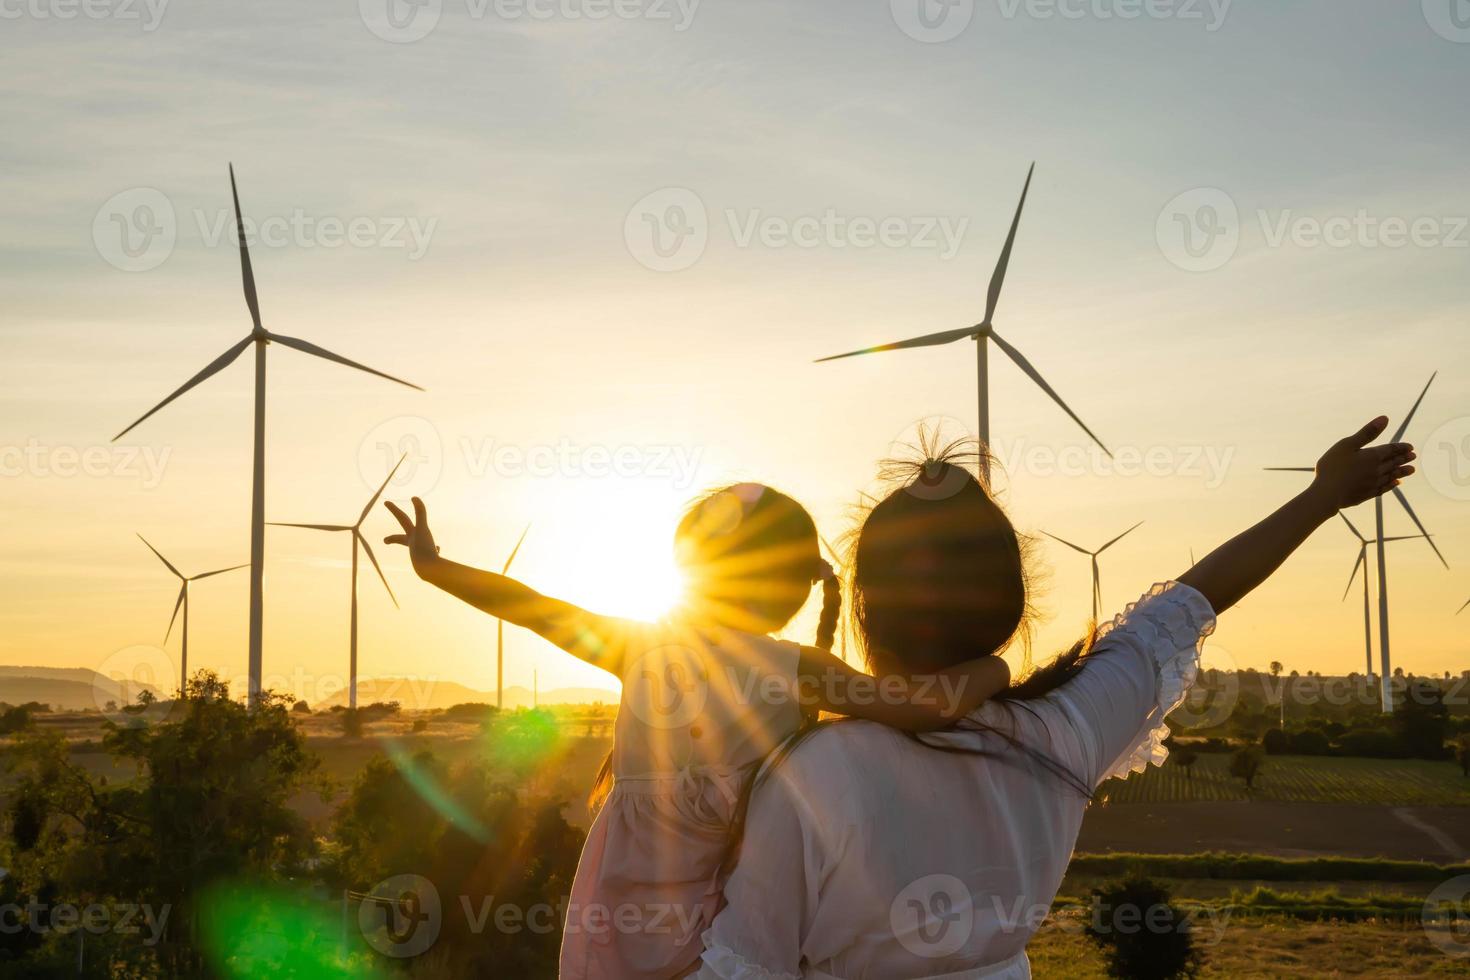 le turbine eoliche sono fonti di elettricità alternative, il concetto di risorse sostenibili, le persone nella comunità con le turbine dei generatori eolici, l'energia rinnovabile foto